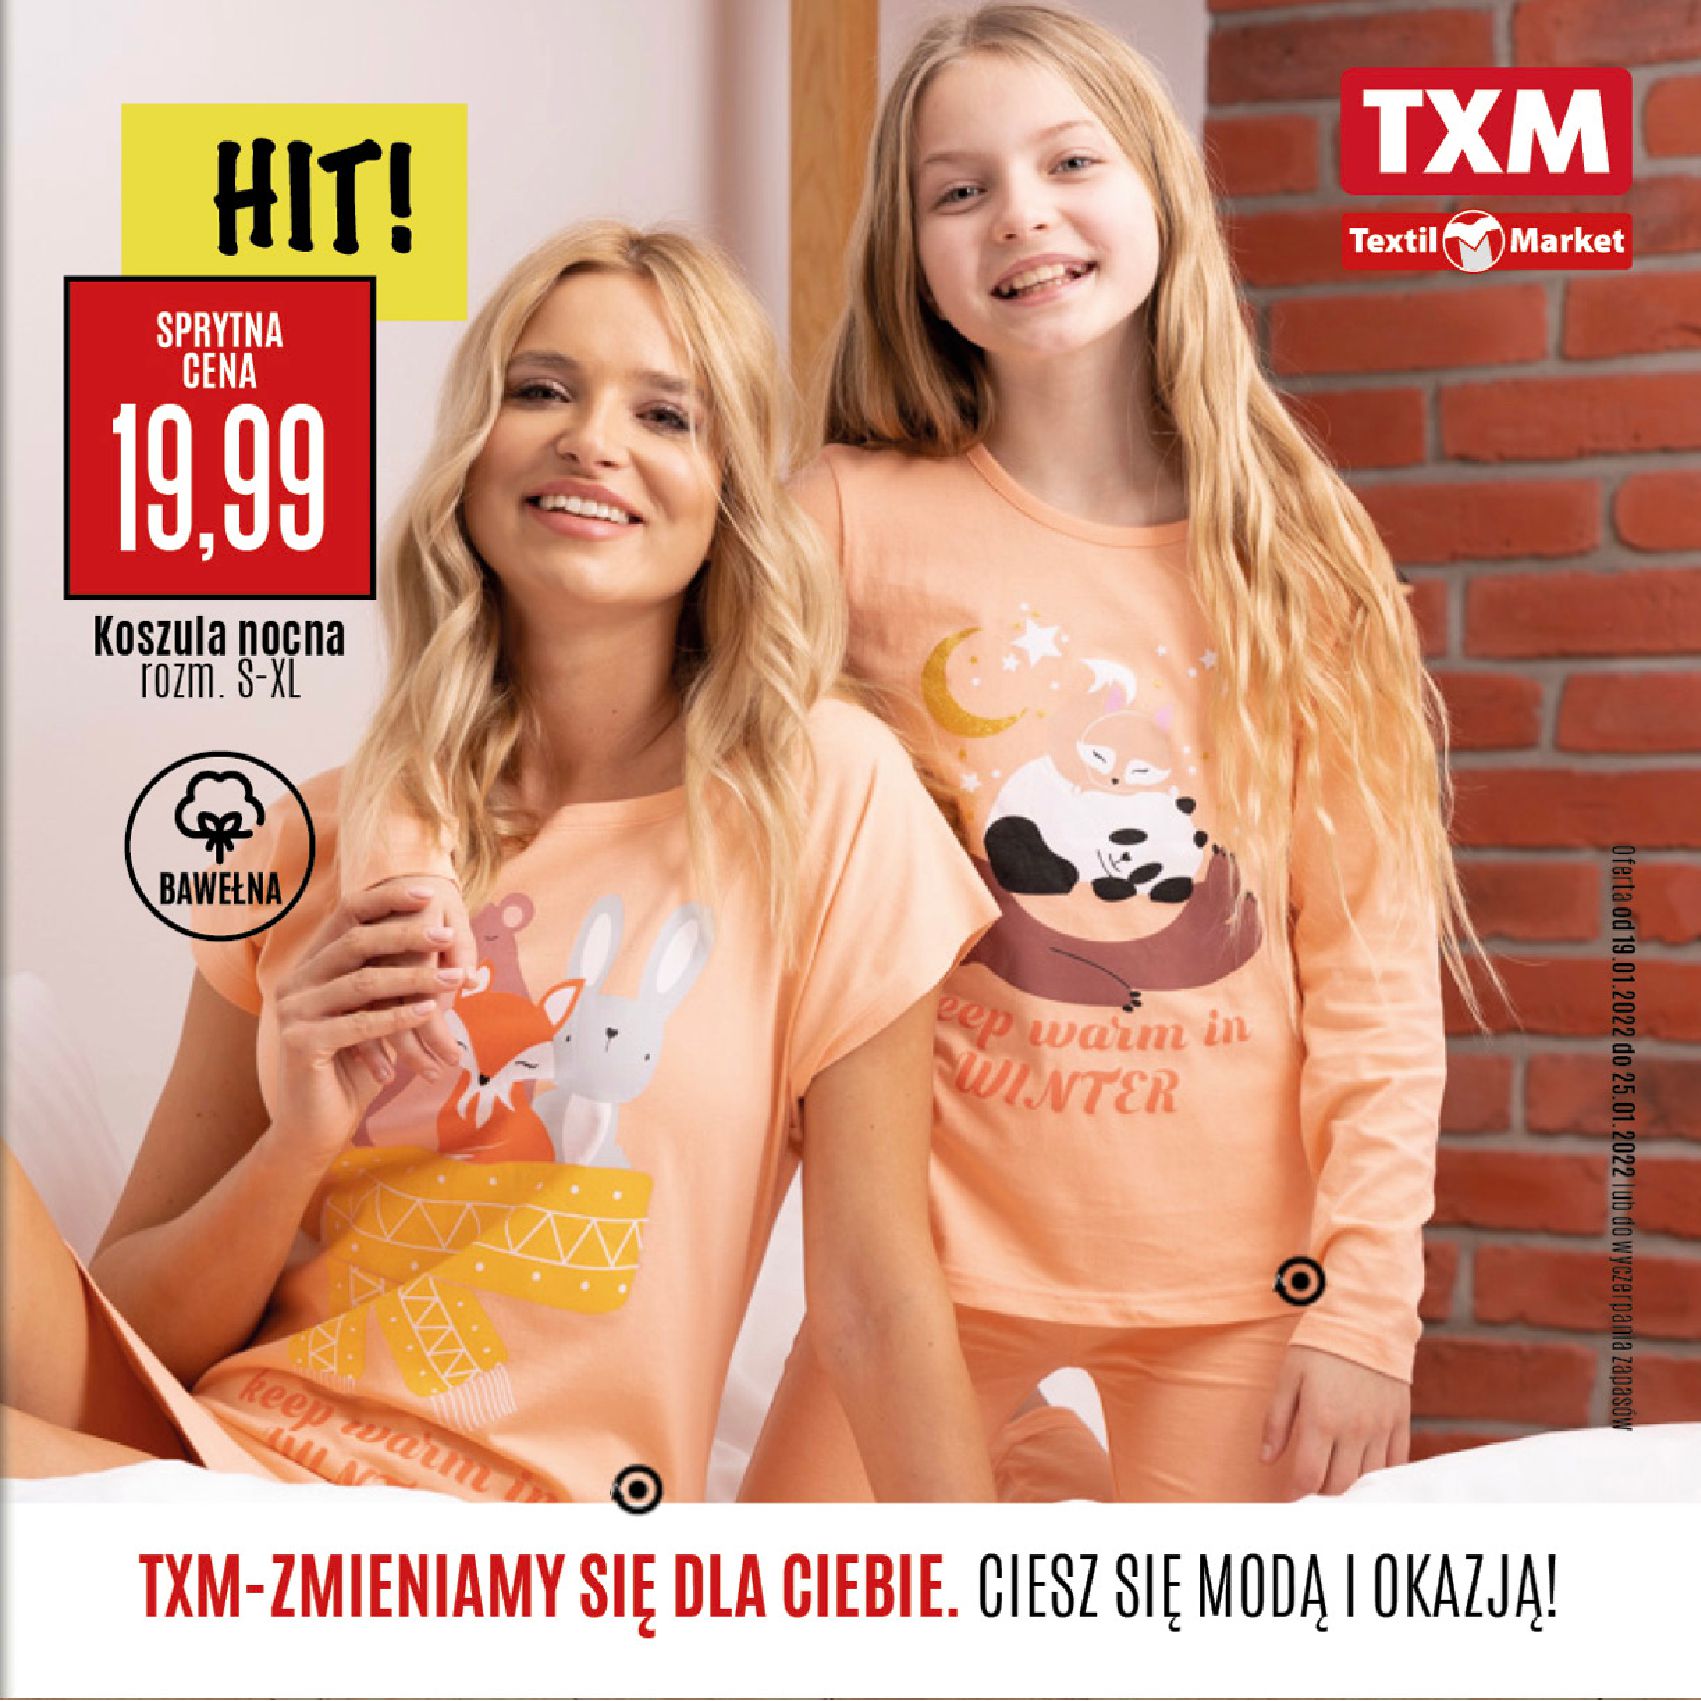 TXM textilmarket:  Gazetka TXM Textilmarket 18.01.2022